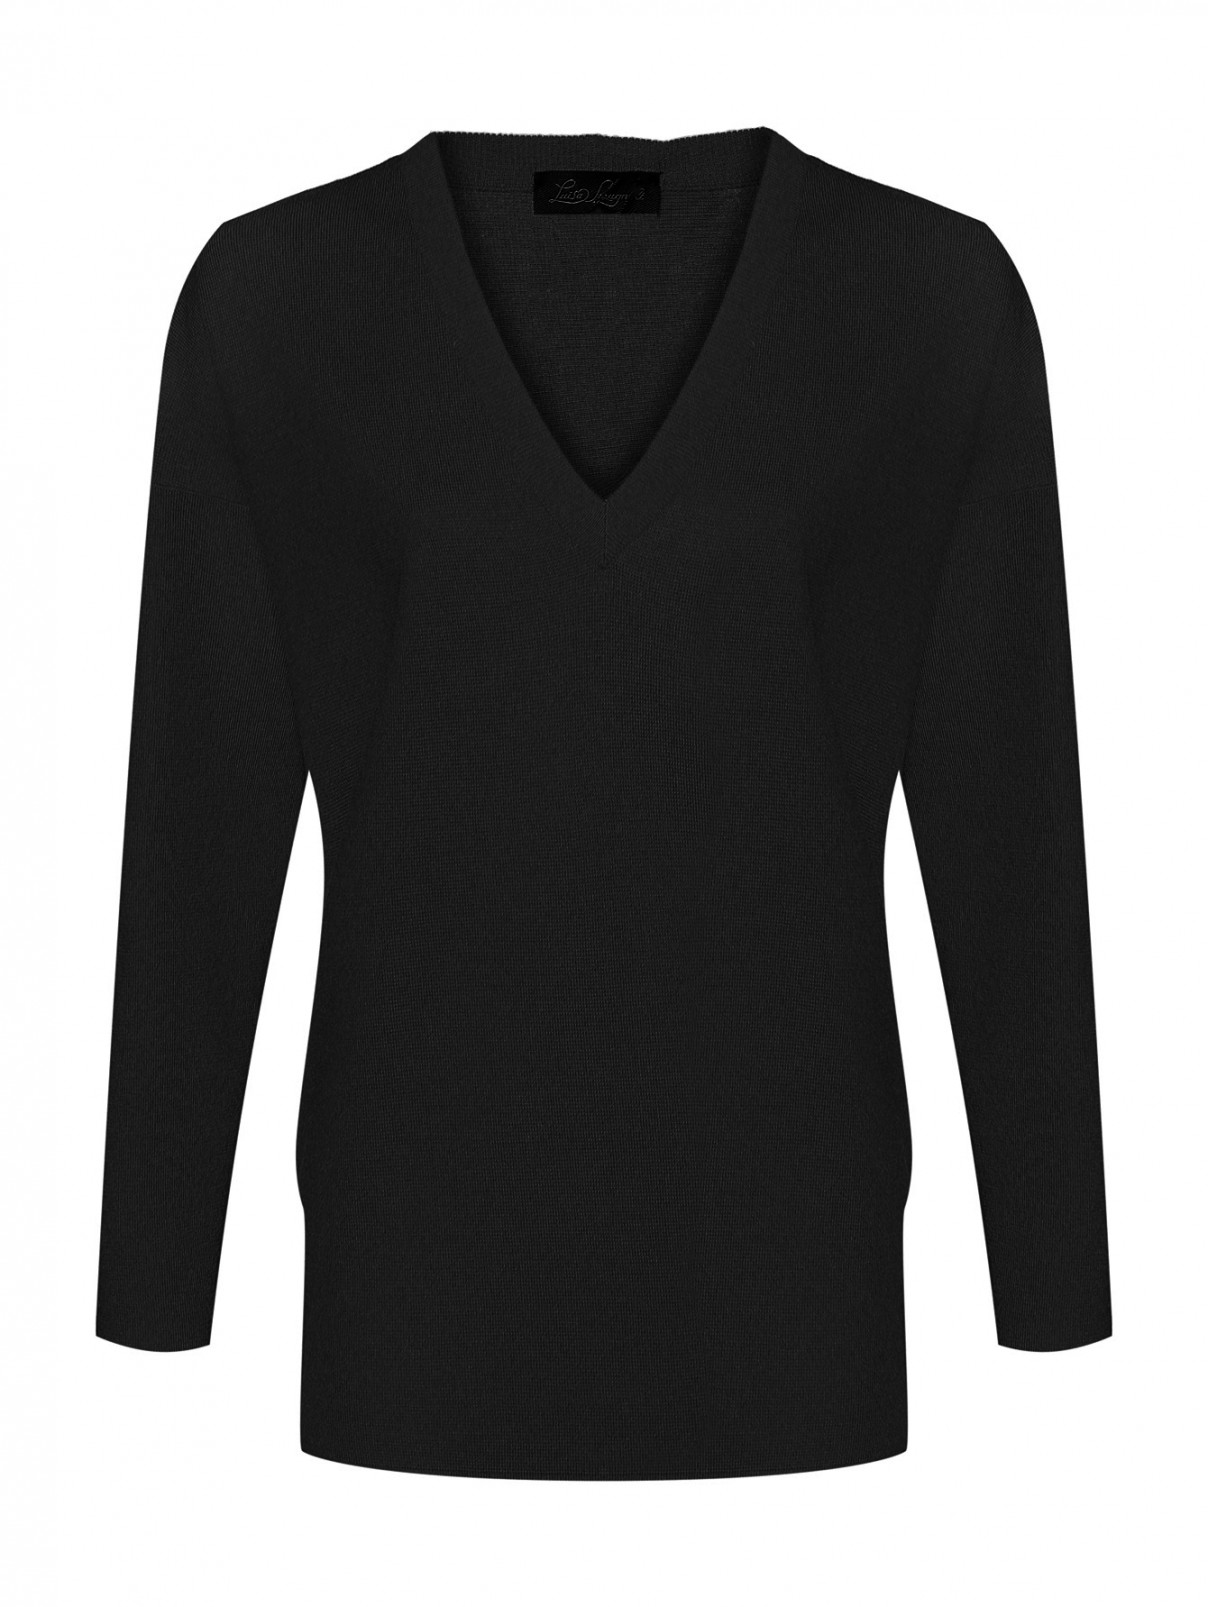 Джемпер из шерсти с V-образным вырезом и карманами Luisa Spagnoli  –  Общий вид  – Цвет:  Черный